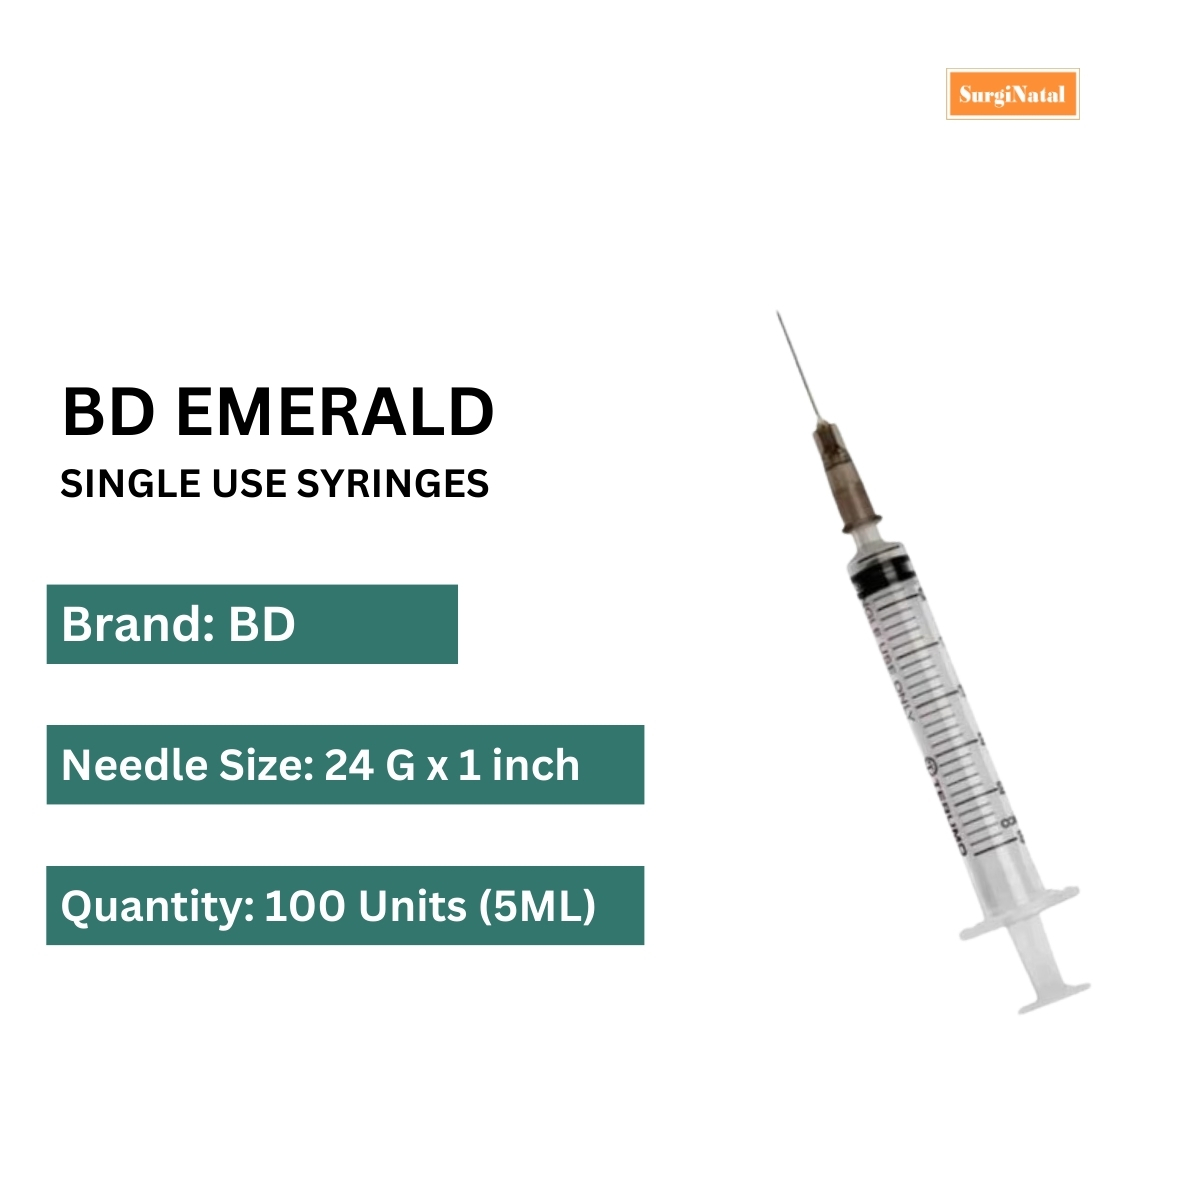 bd emerald 5ml syringe with needle - 24g -100 syringe box